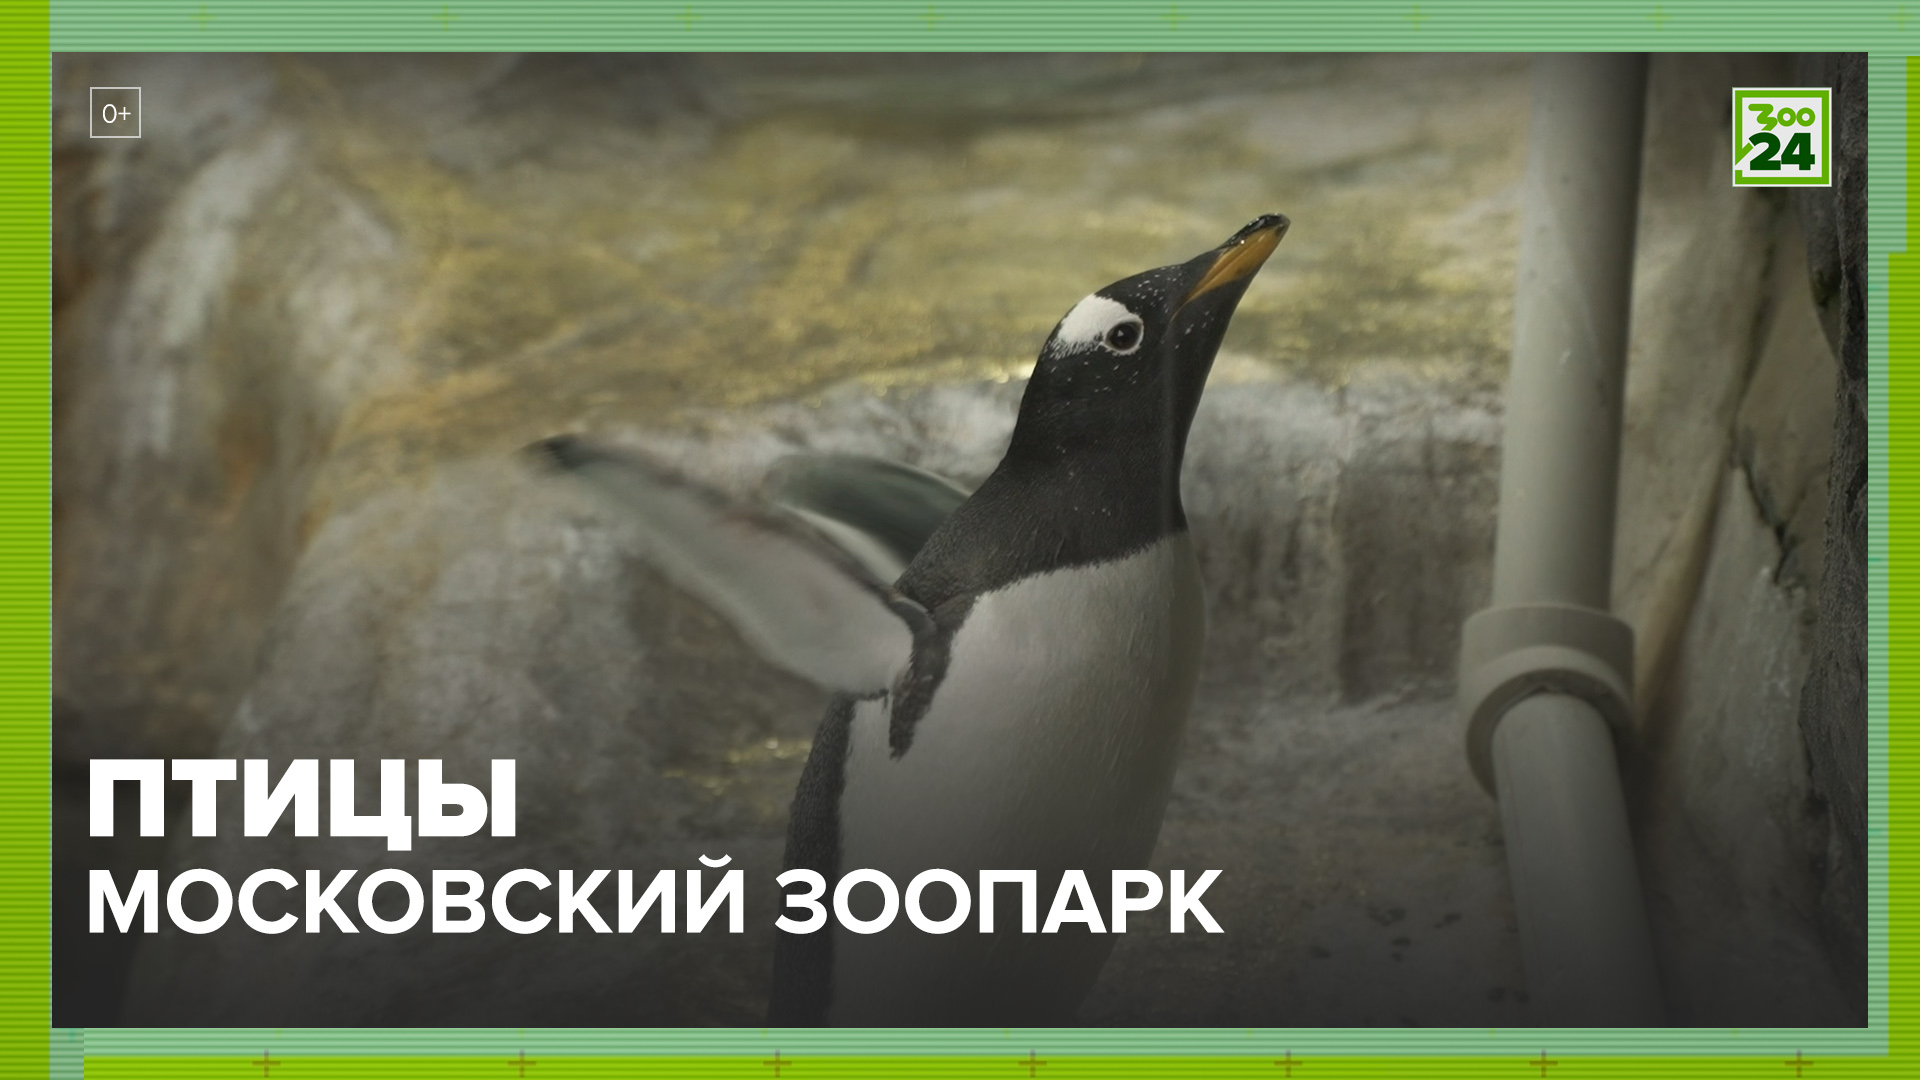 Птицы | Московский зоопарк | ЗОО 24